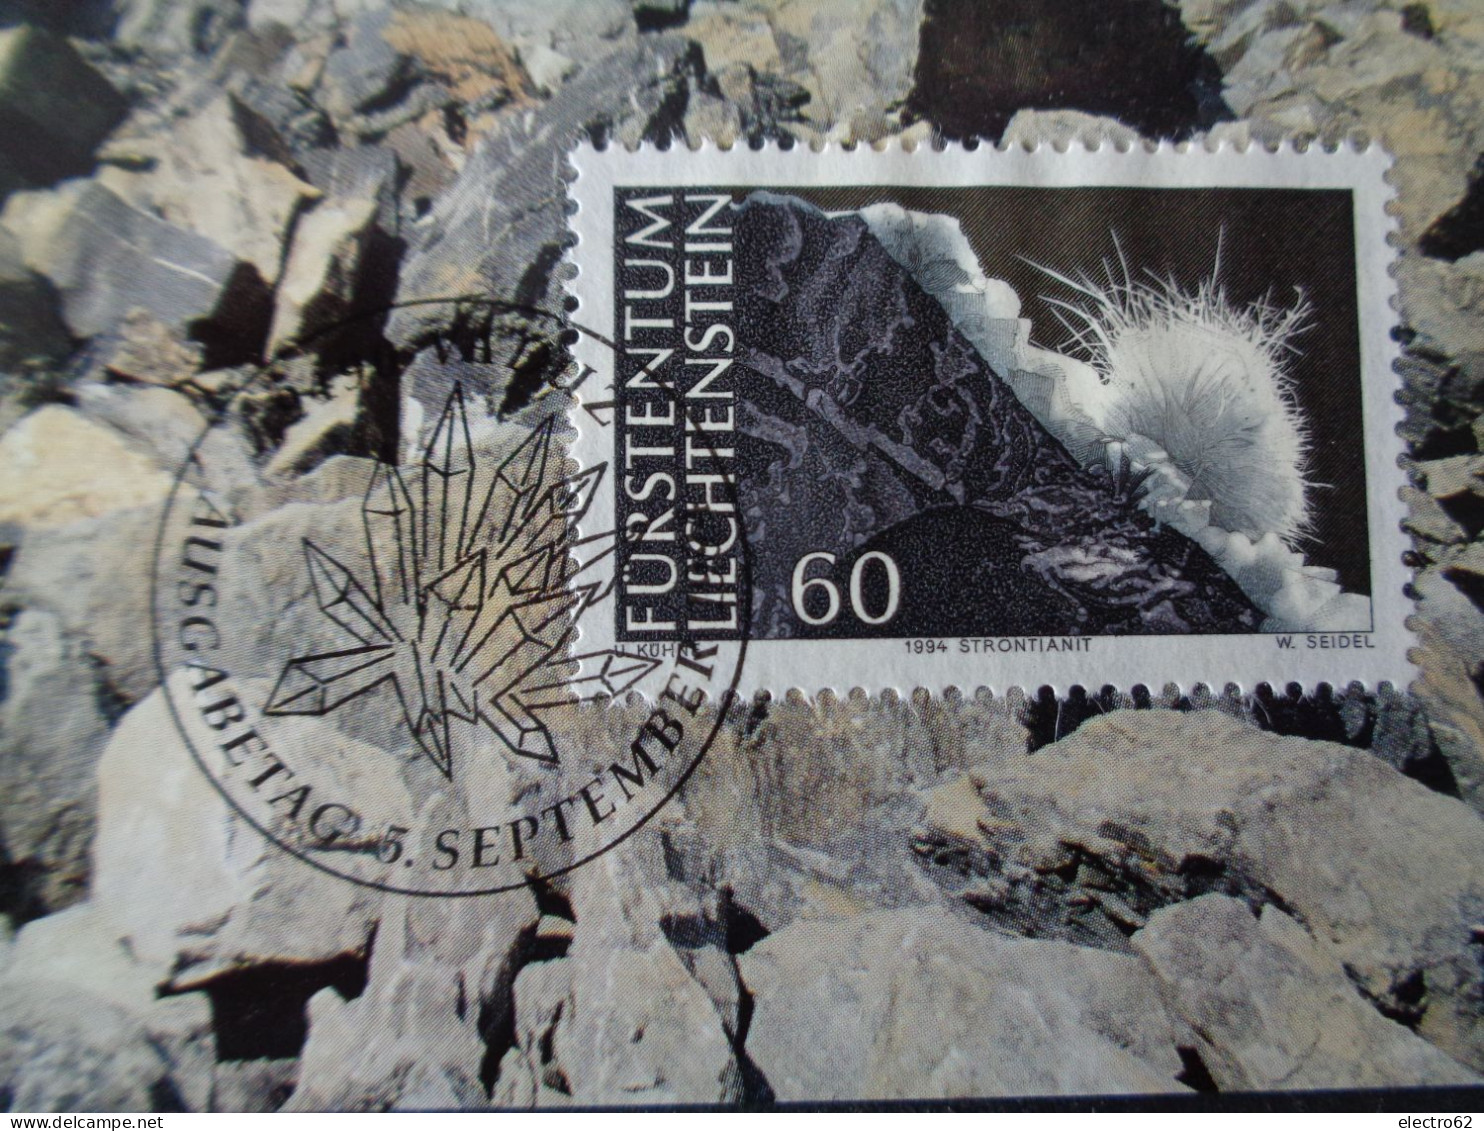 Fürstentum Liechtenstein Minéraux Strontianite Strontianit Minerals Mineralien Minerales Minerali - Minéraux